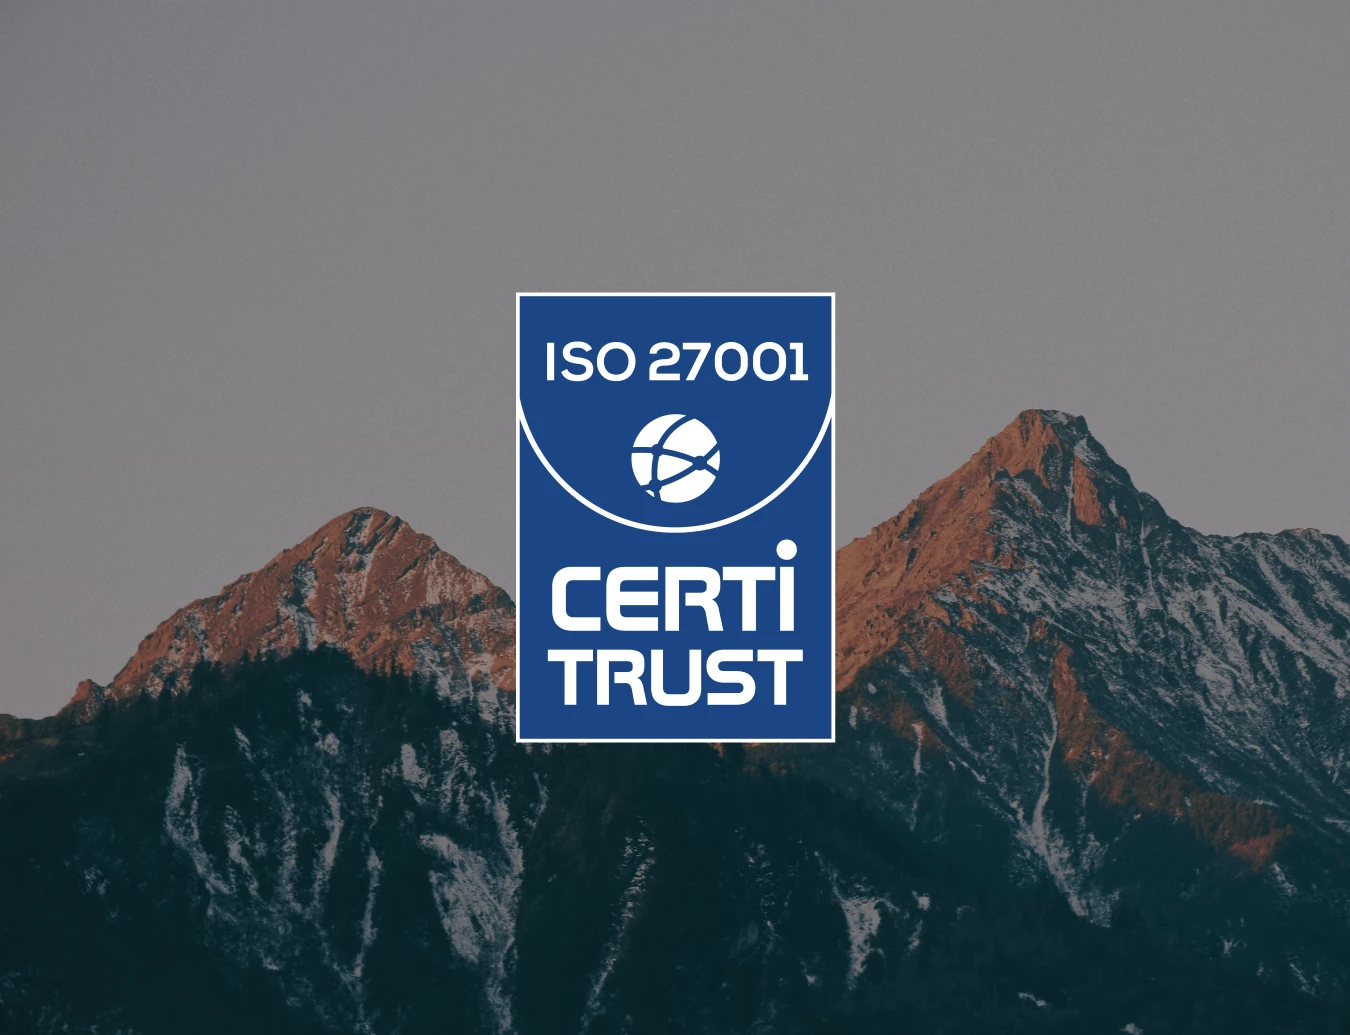 logo ISO 27001 Certitrust